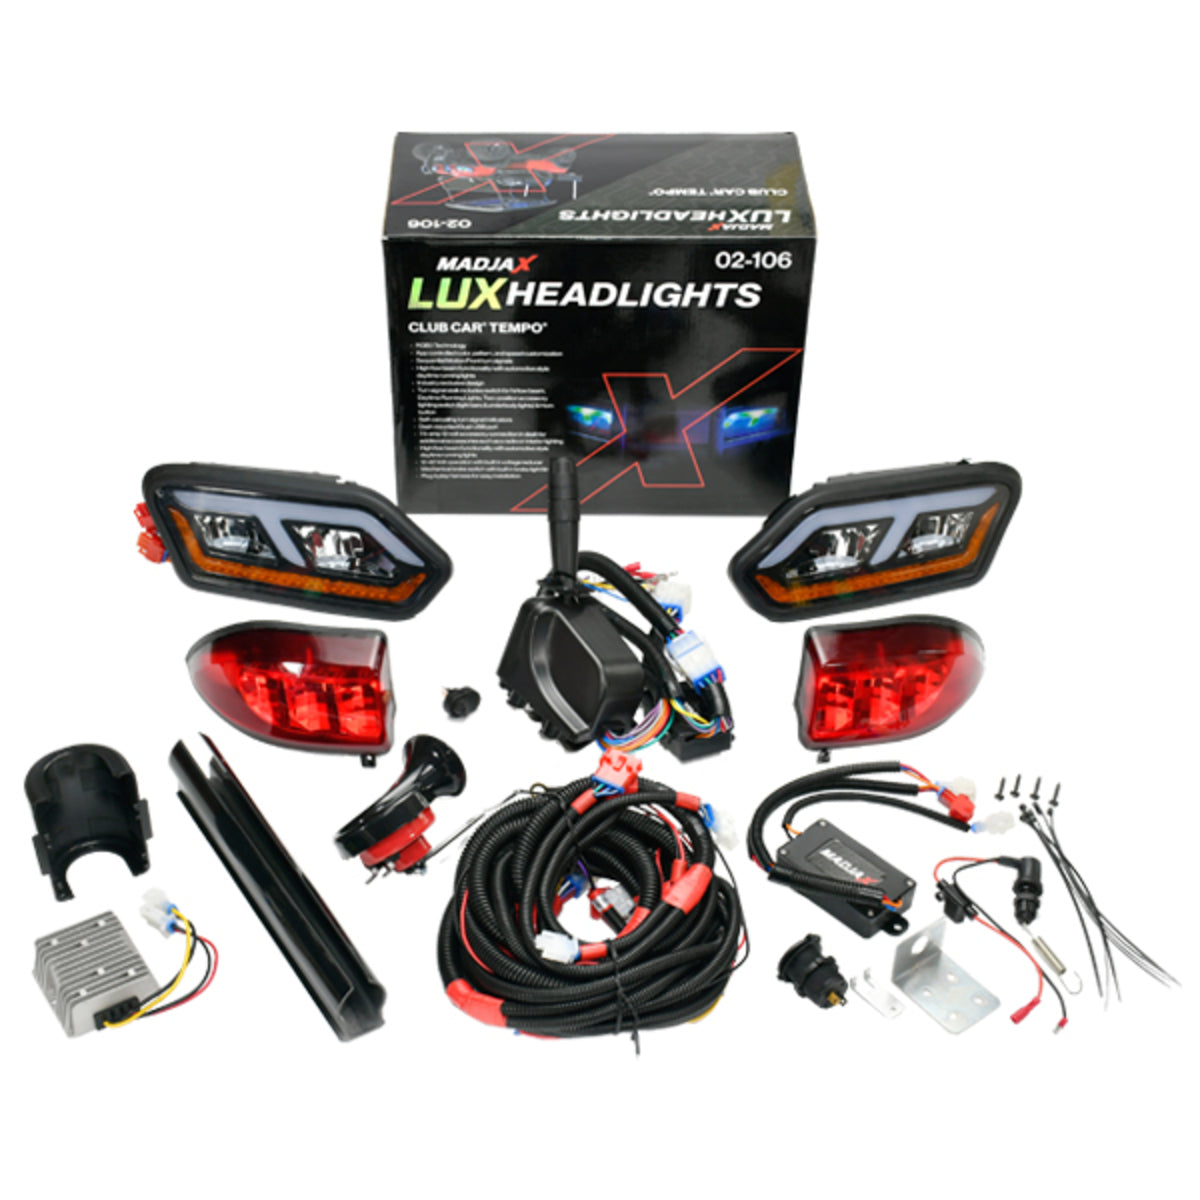 MadJax LUX Headlight Kit for Club Car Tempo 02-106